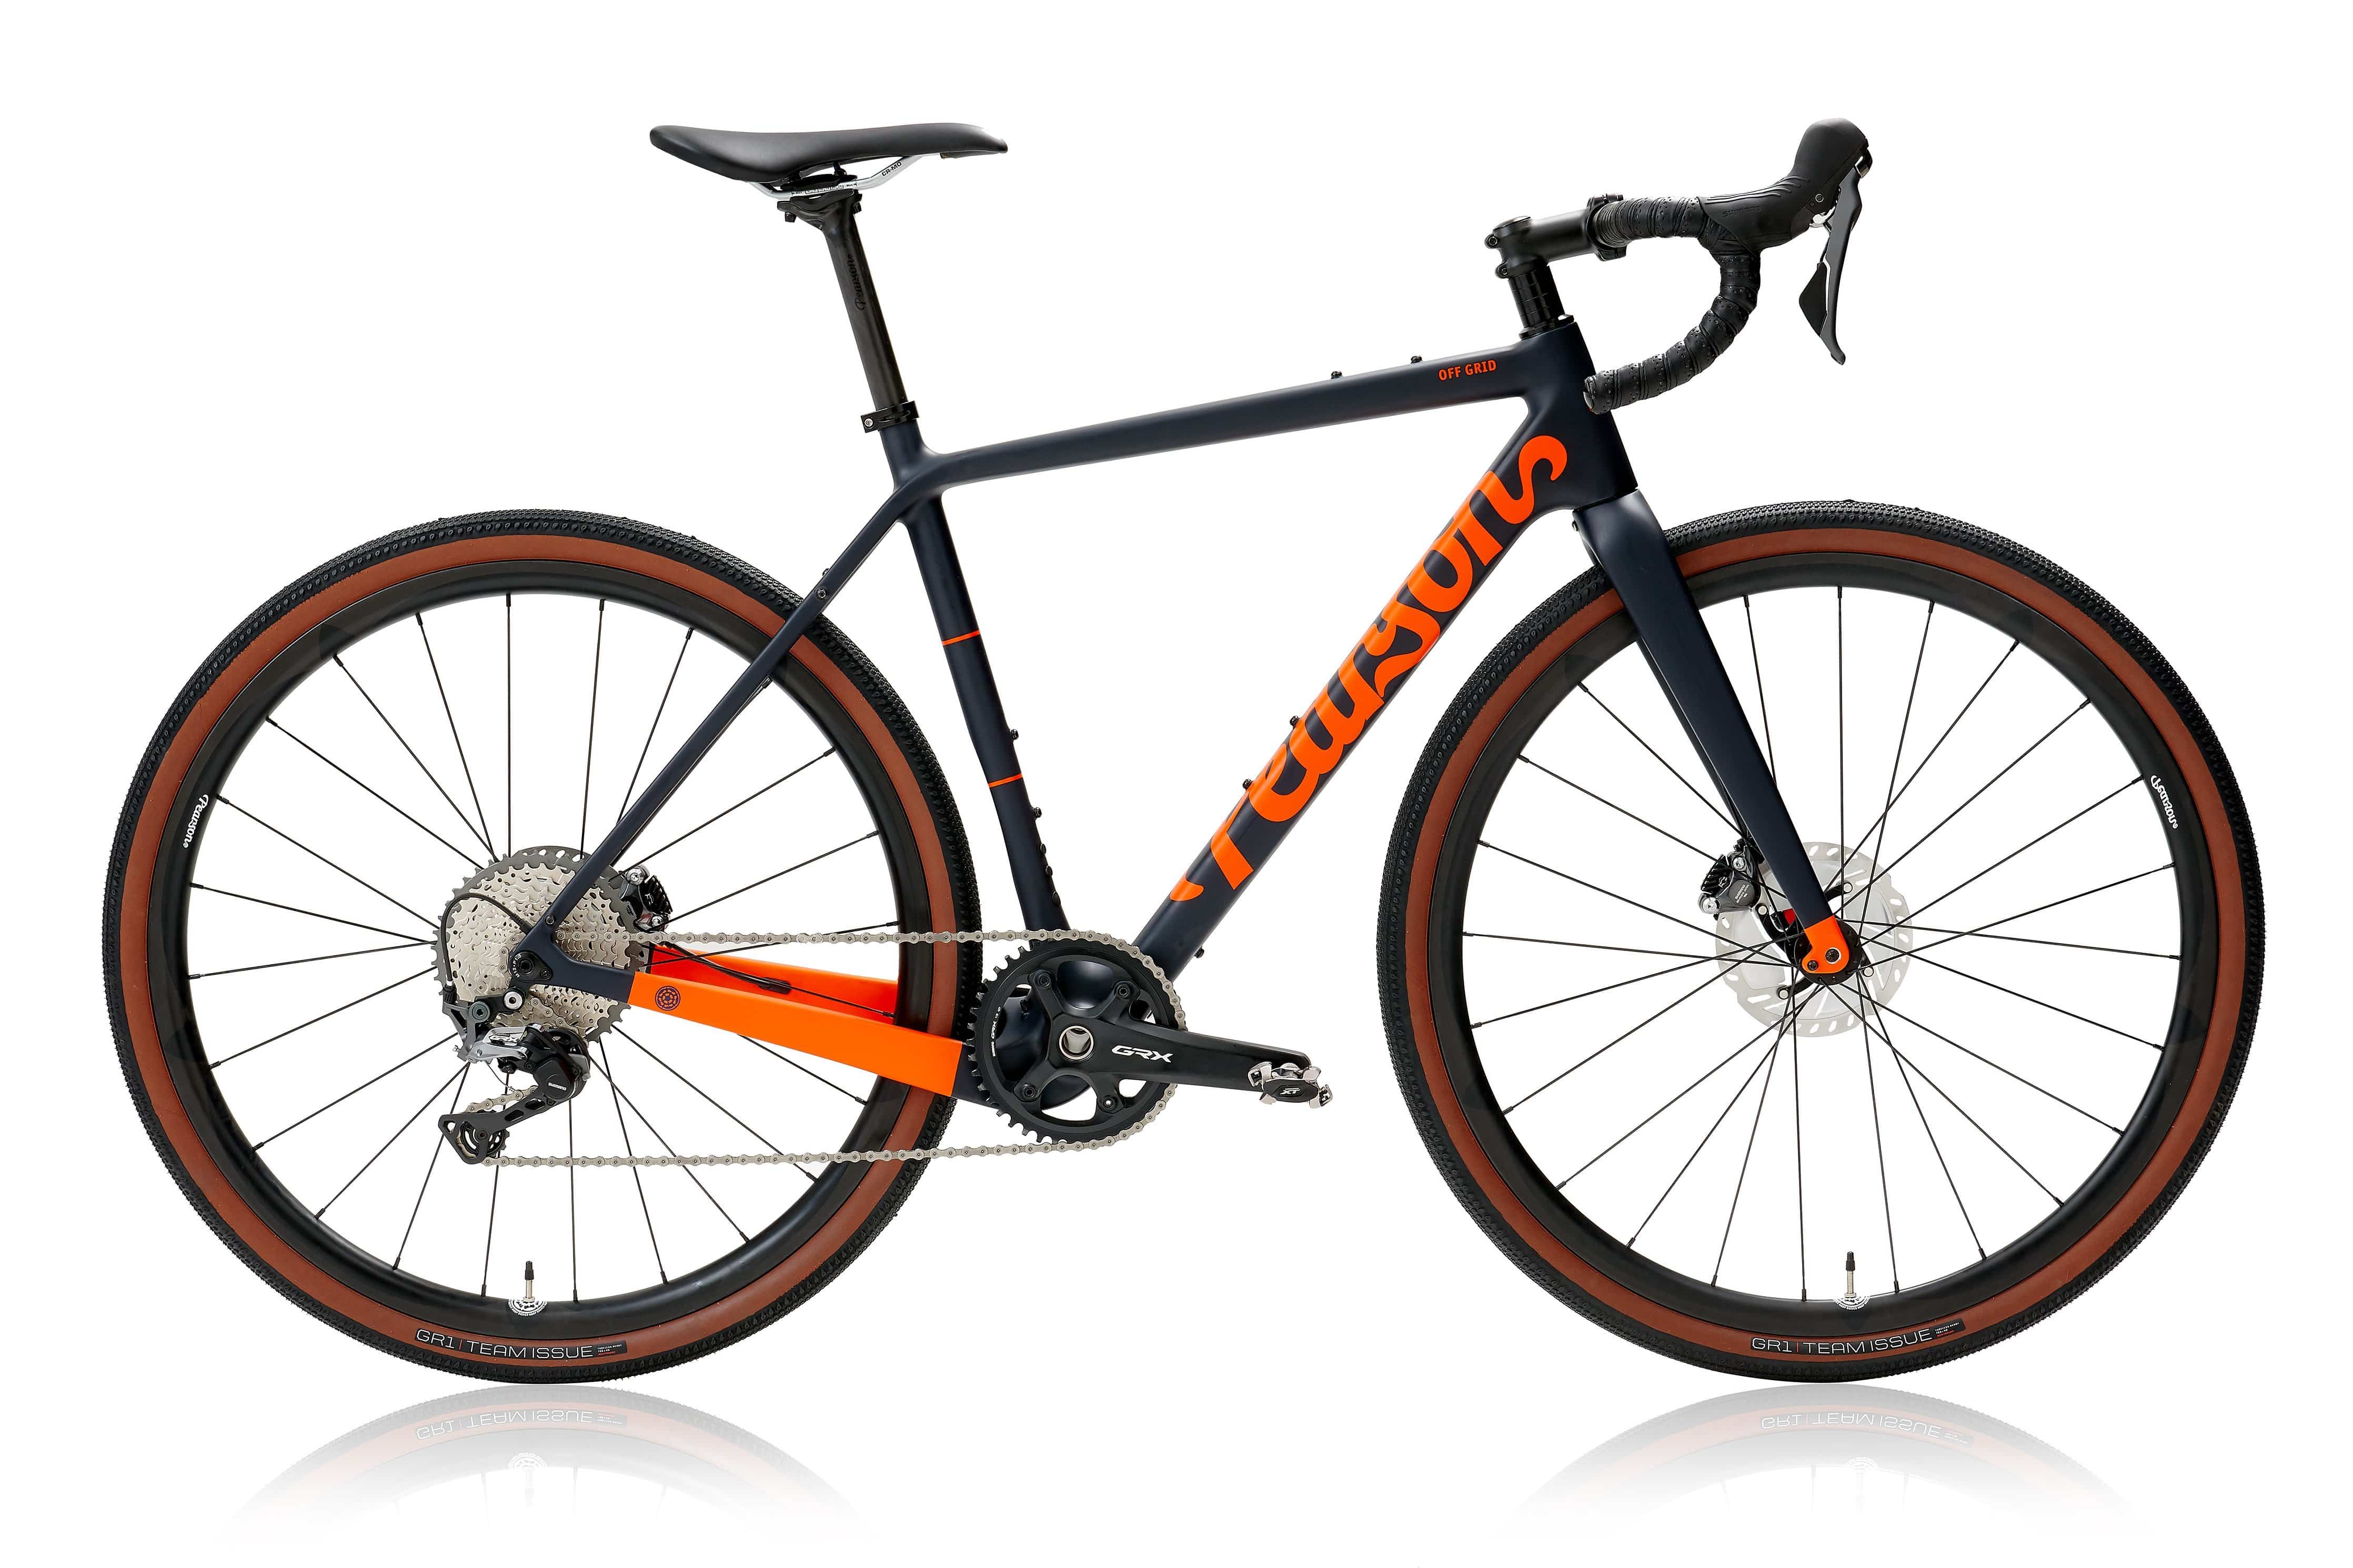 Pcs  Off Grid - Carbon Gravel Bike  Matt Orange On Matt Deep Blue / X-small / Grx 800 Mechanical - Hoopdriver Bump And Grind Carbon